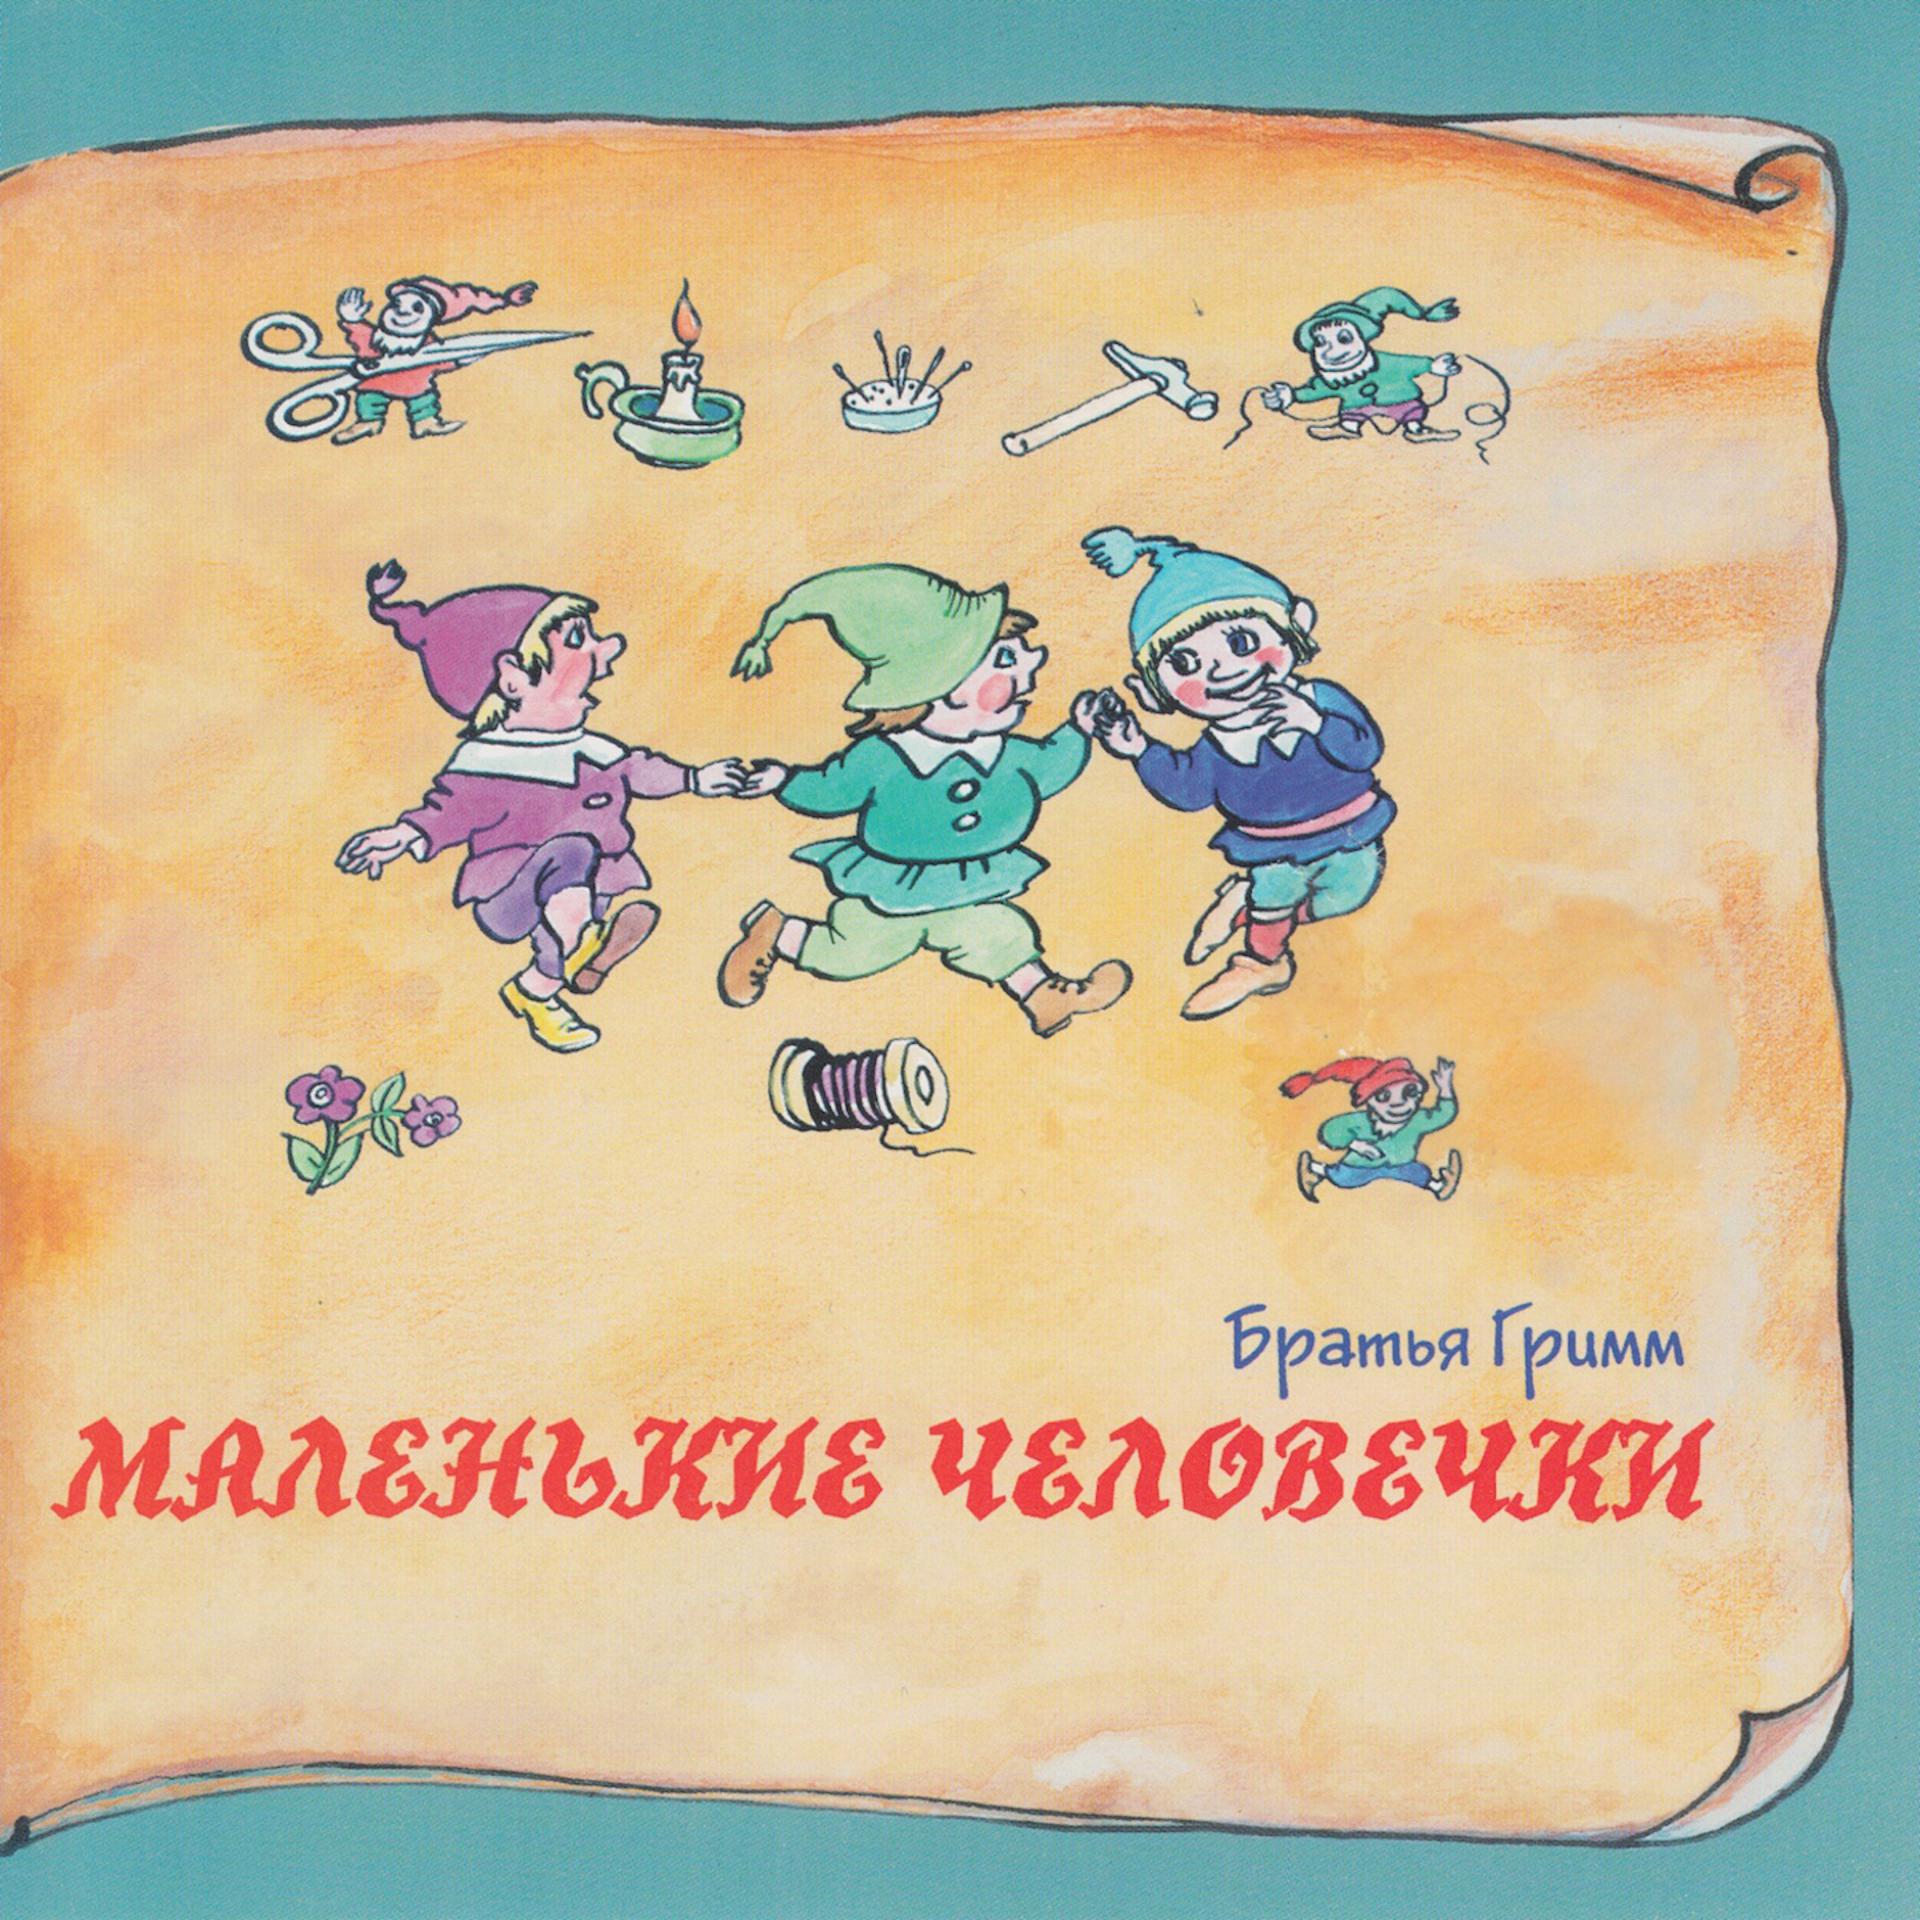 Постер к треку Татьяна Родионова - Царица пчёл